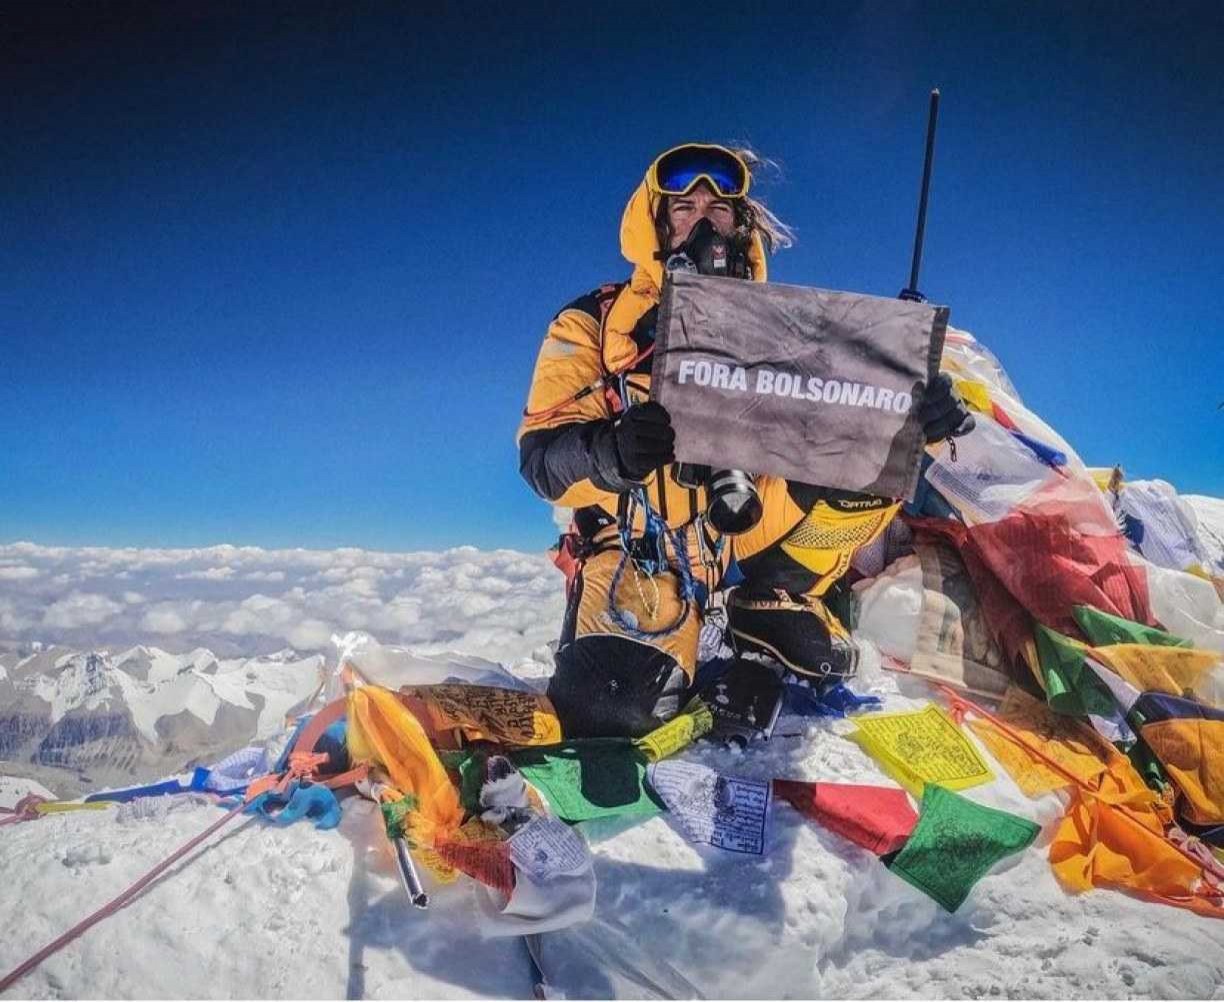 Brasileiro chega a topo do Everest com placa ‘Fora Bolsonaro’: 